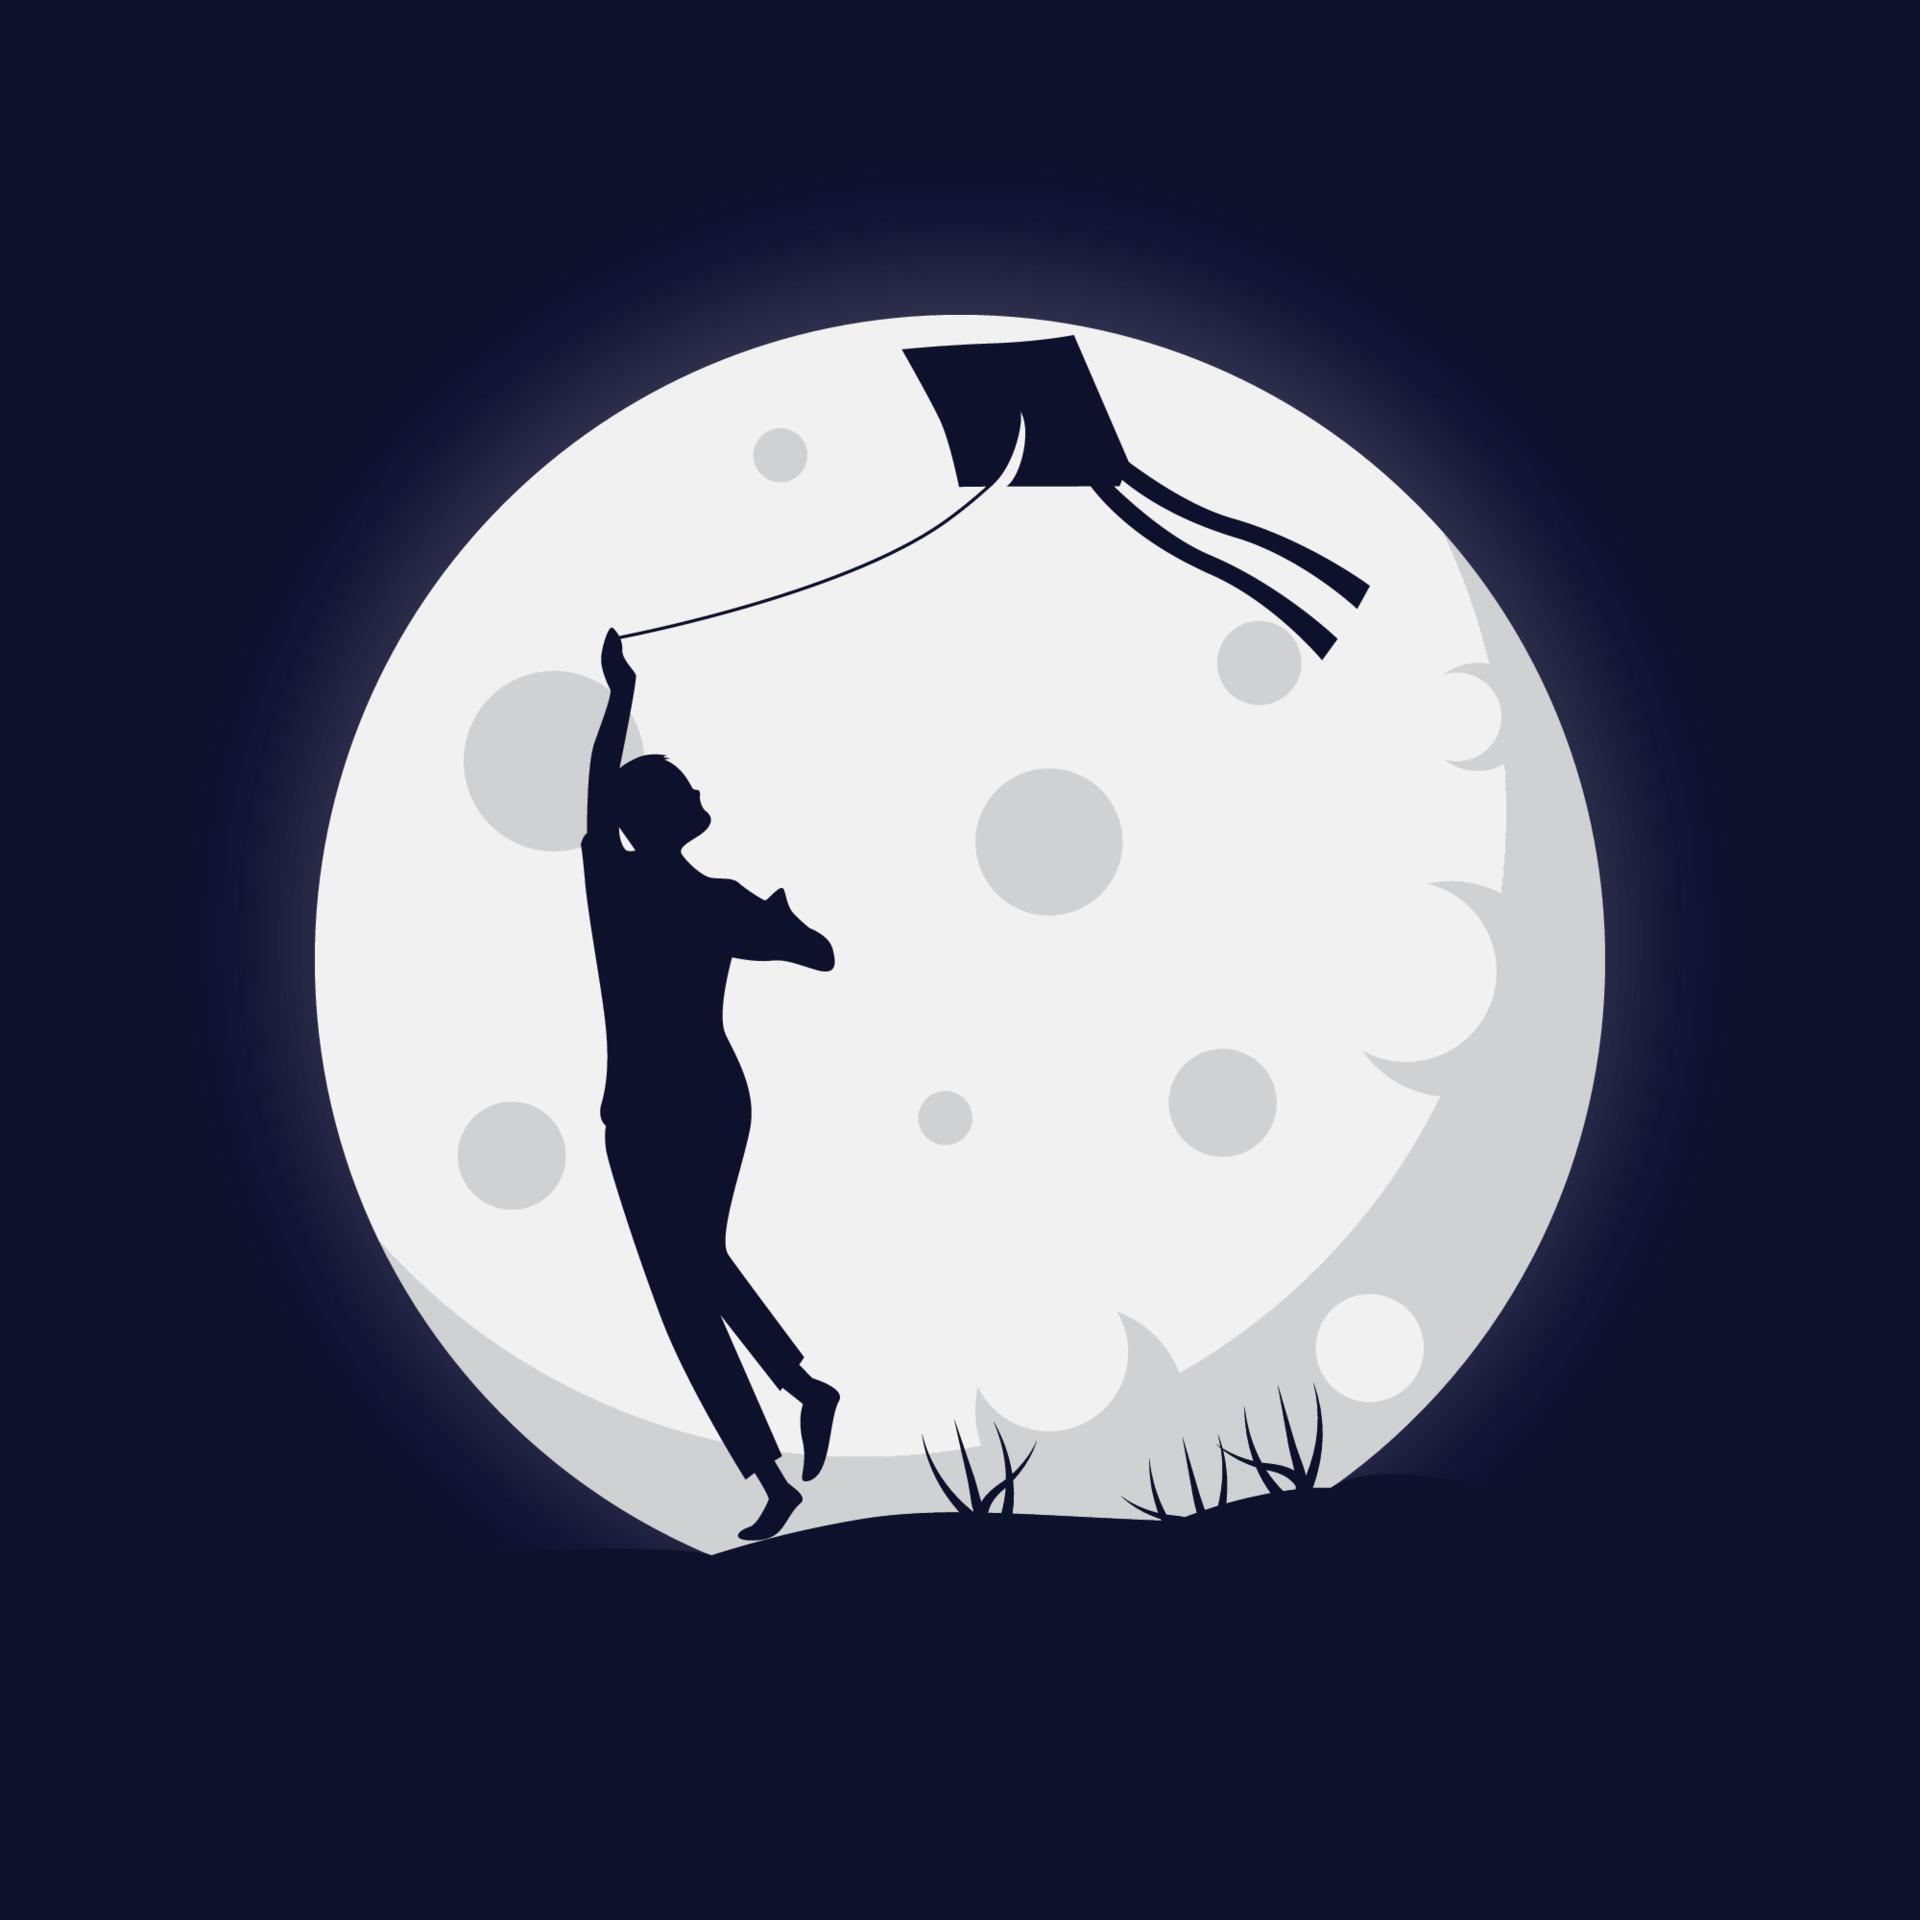 silueta de personas jugando cometas con ilustración de fondo de luna llena vector